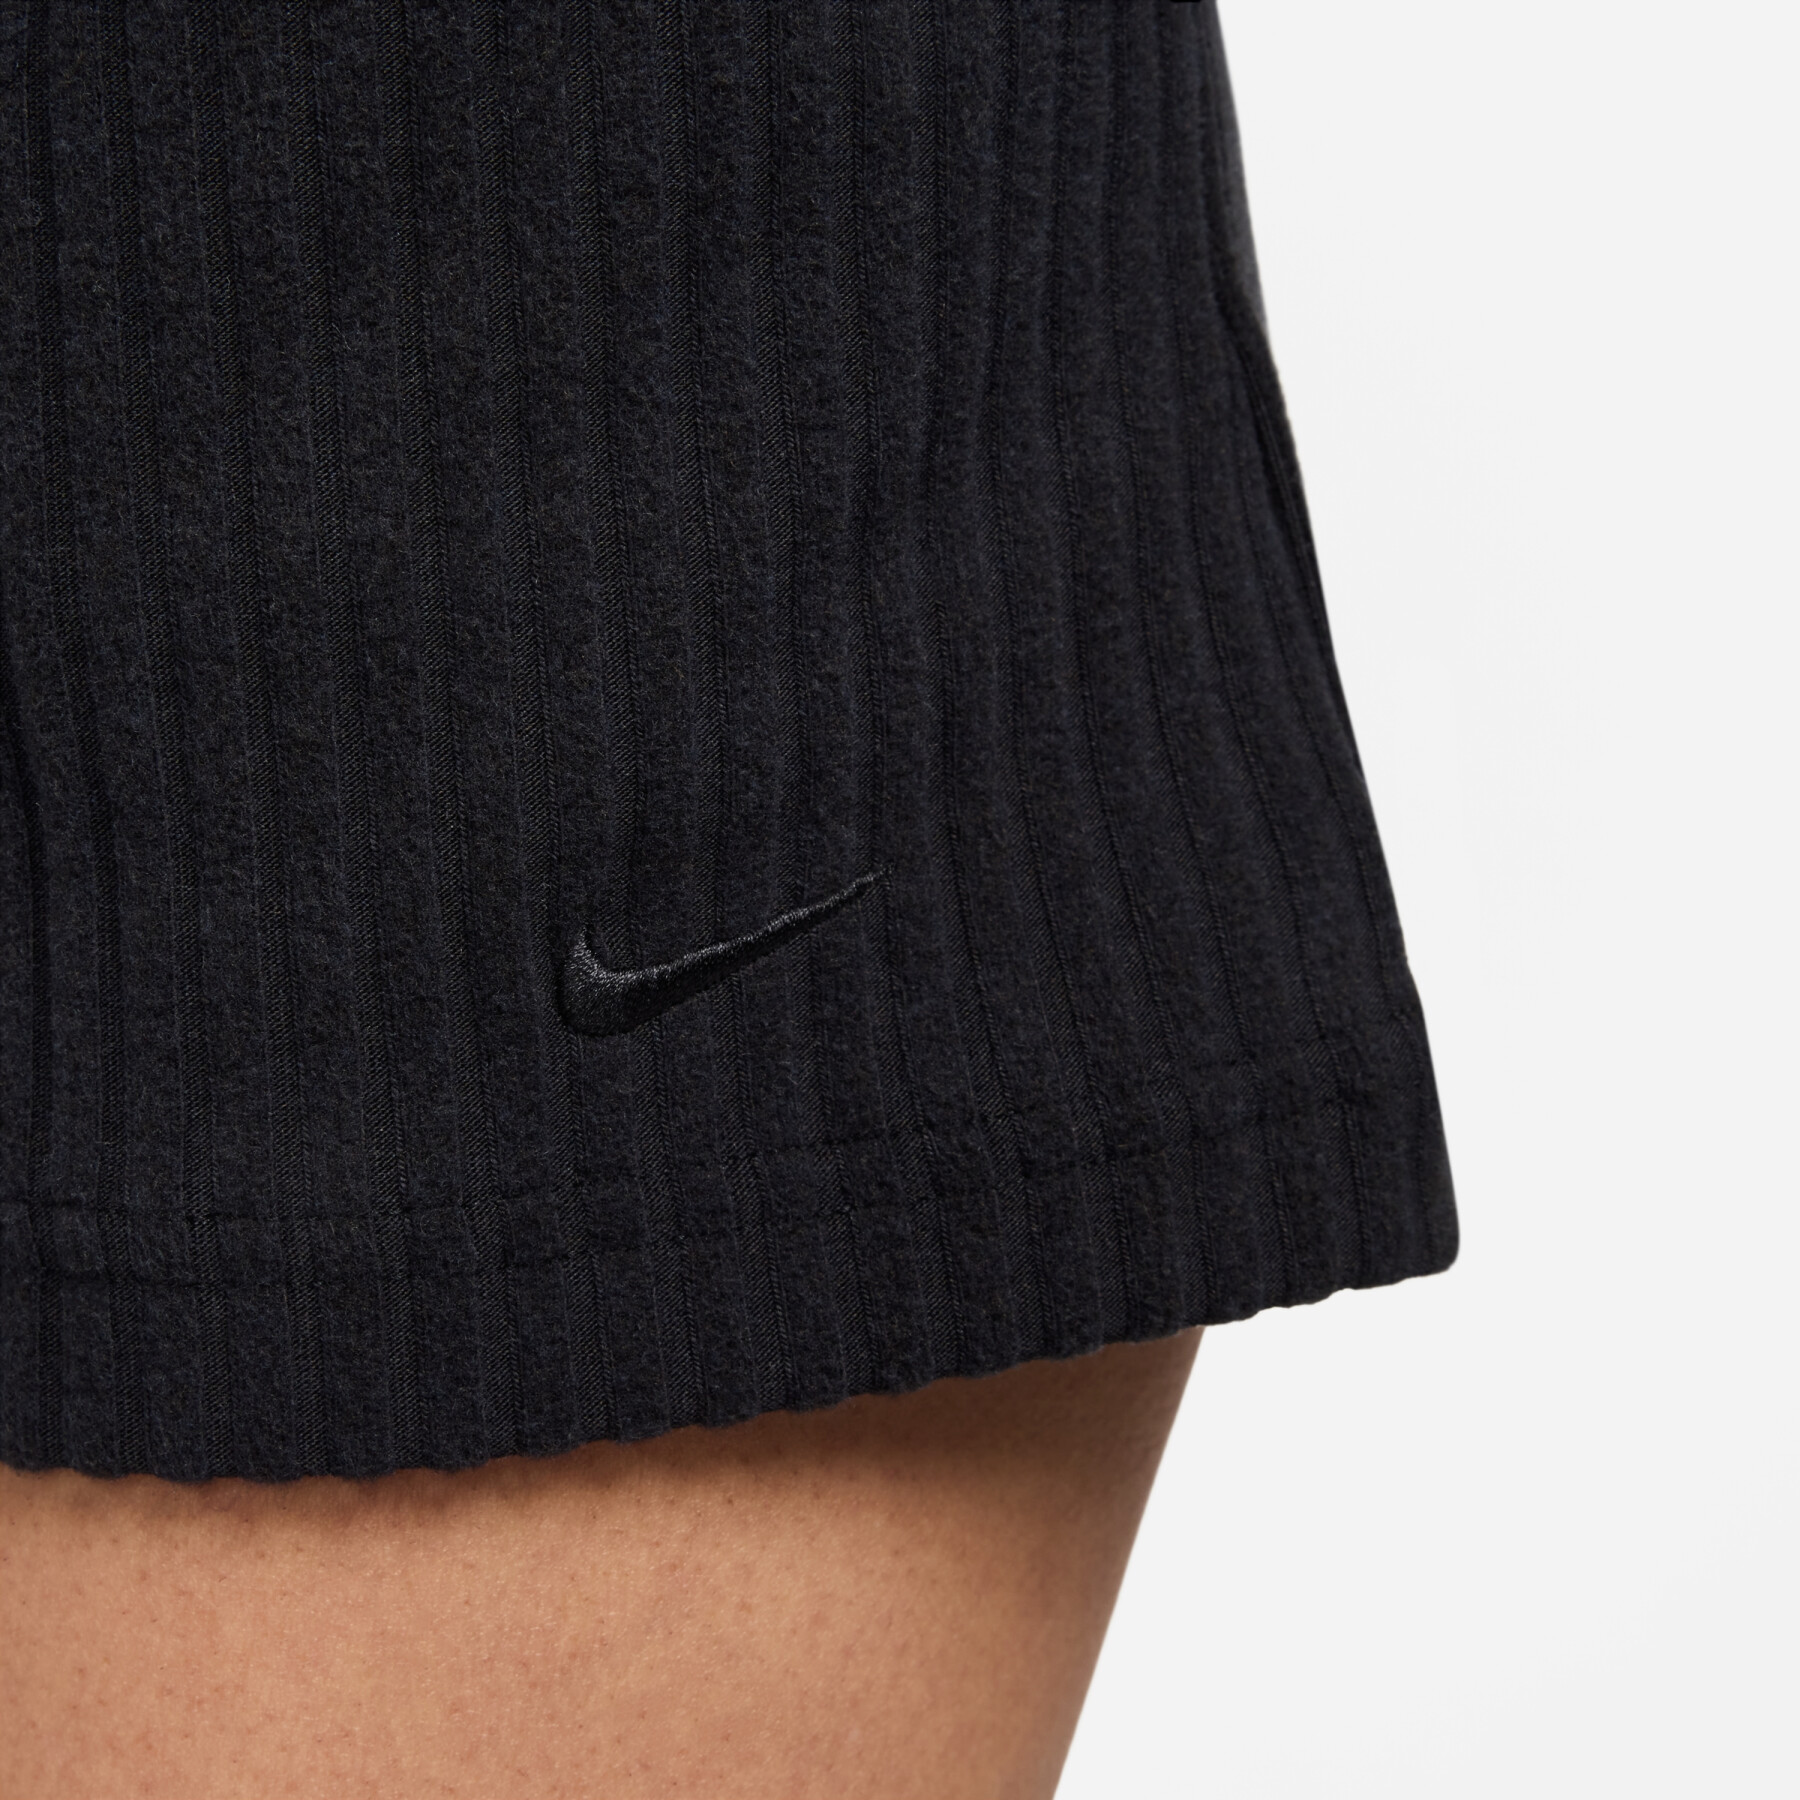 Pantalón corto mujer Nike Chill Knit